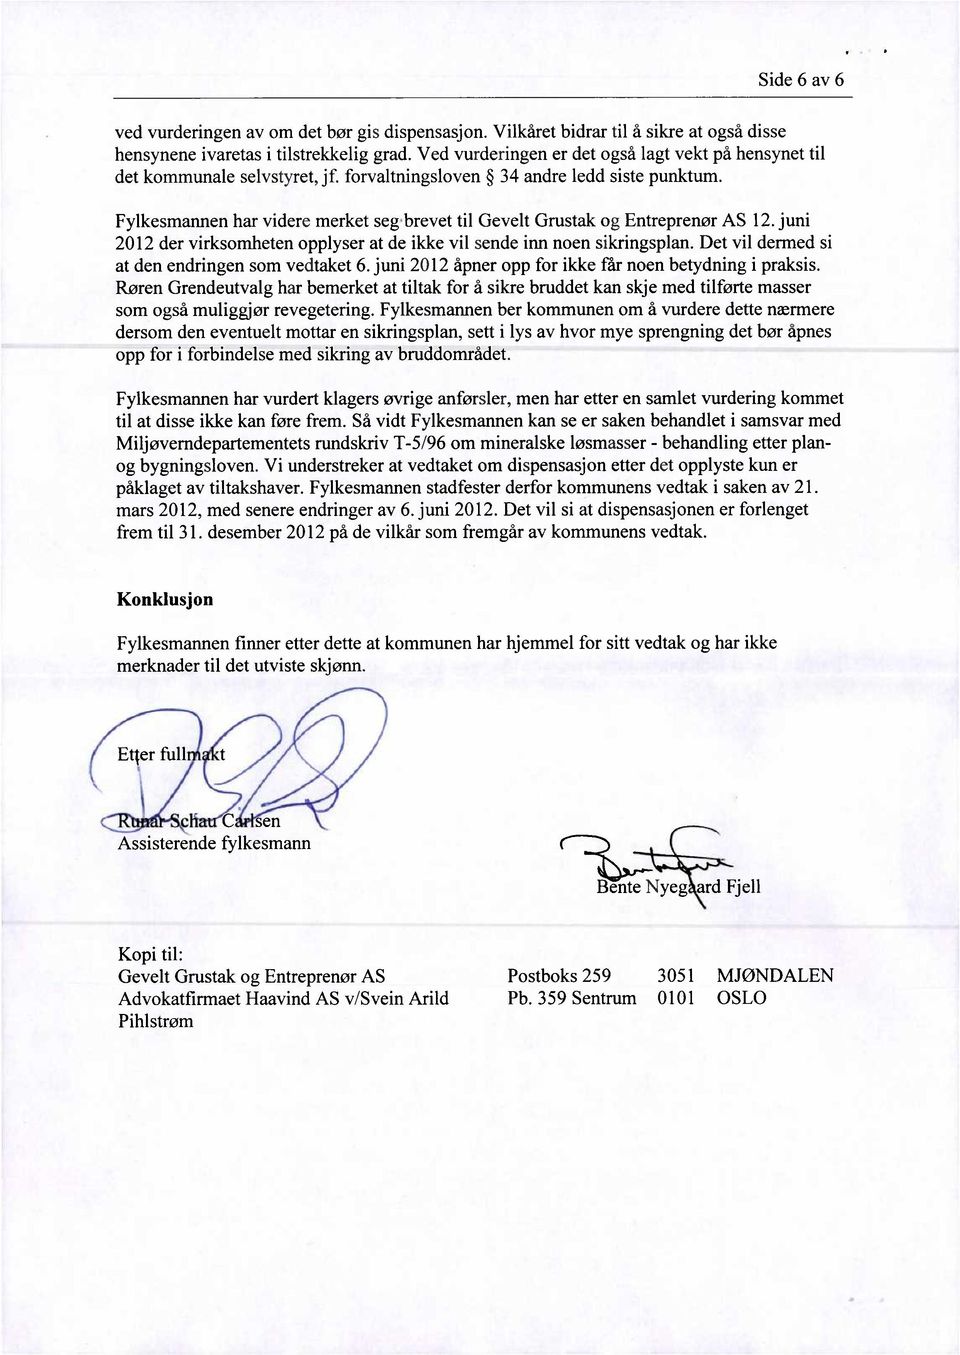 Fylkesmannen har videre merket seg brevet til Gevelt Grustak og Entreprenør AS 12. juni 2012 der virksomheten opplyser at de ikke vil sende inn noen sikringsplan.